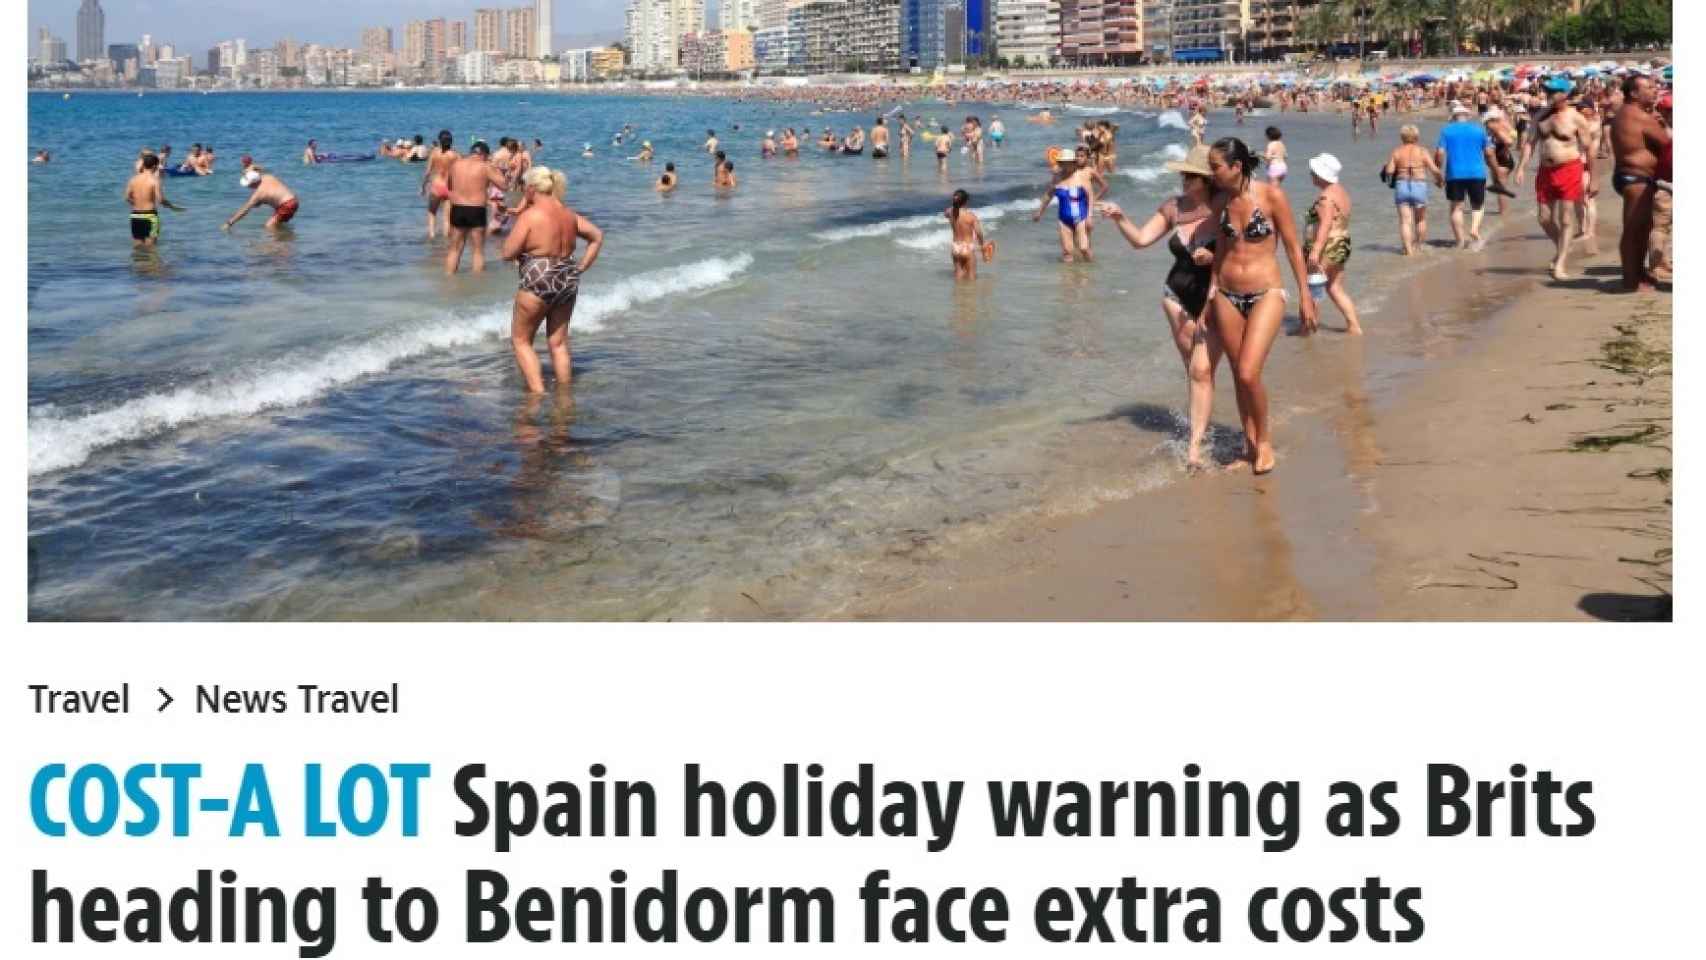 Encabezado de la pieza que alerta sobre la nueva tasa turística valenciana.